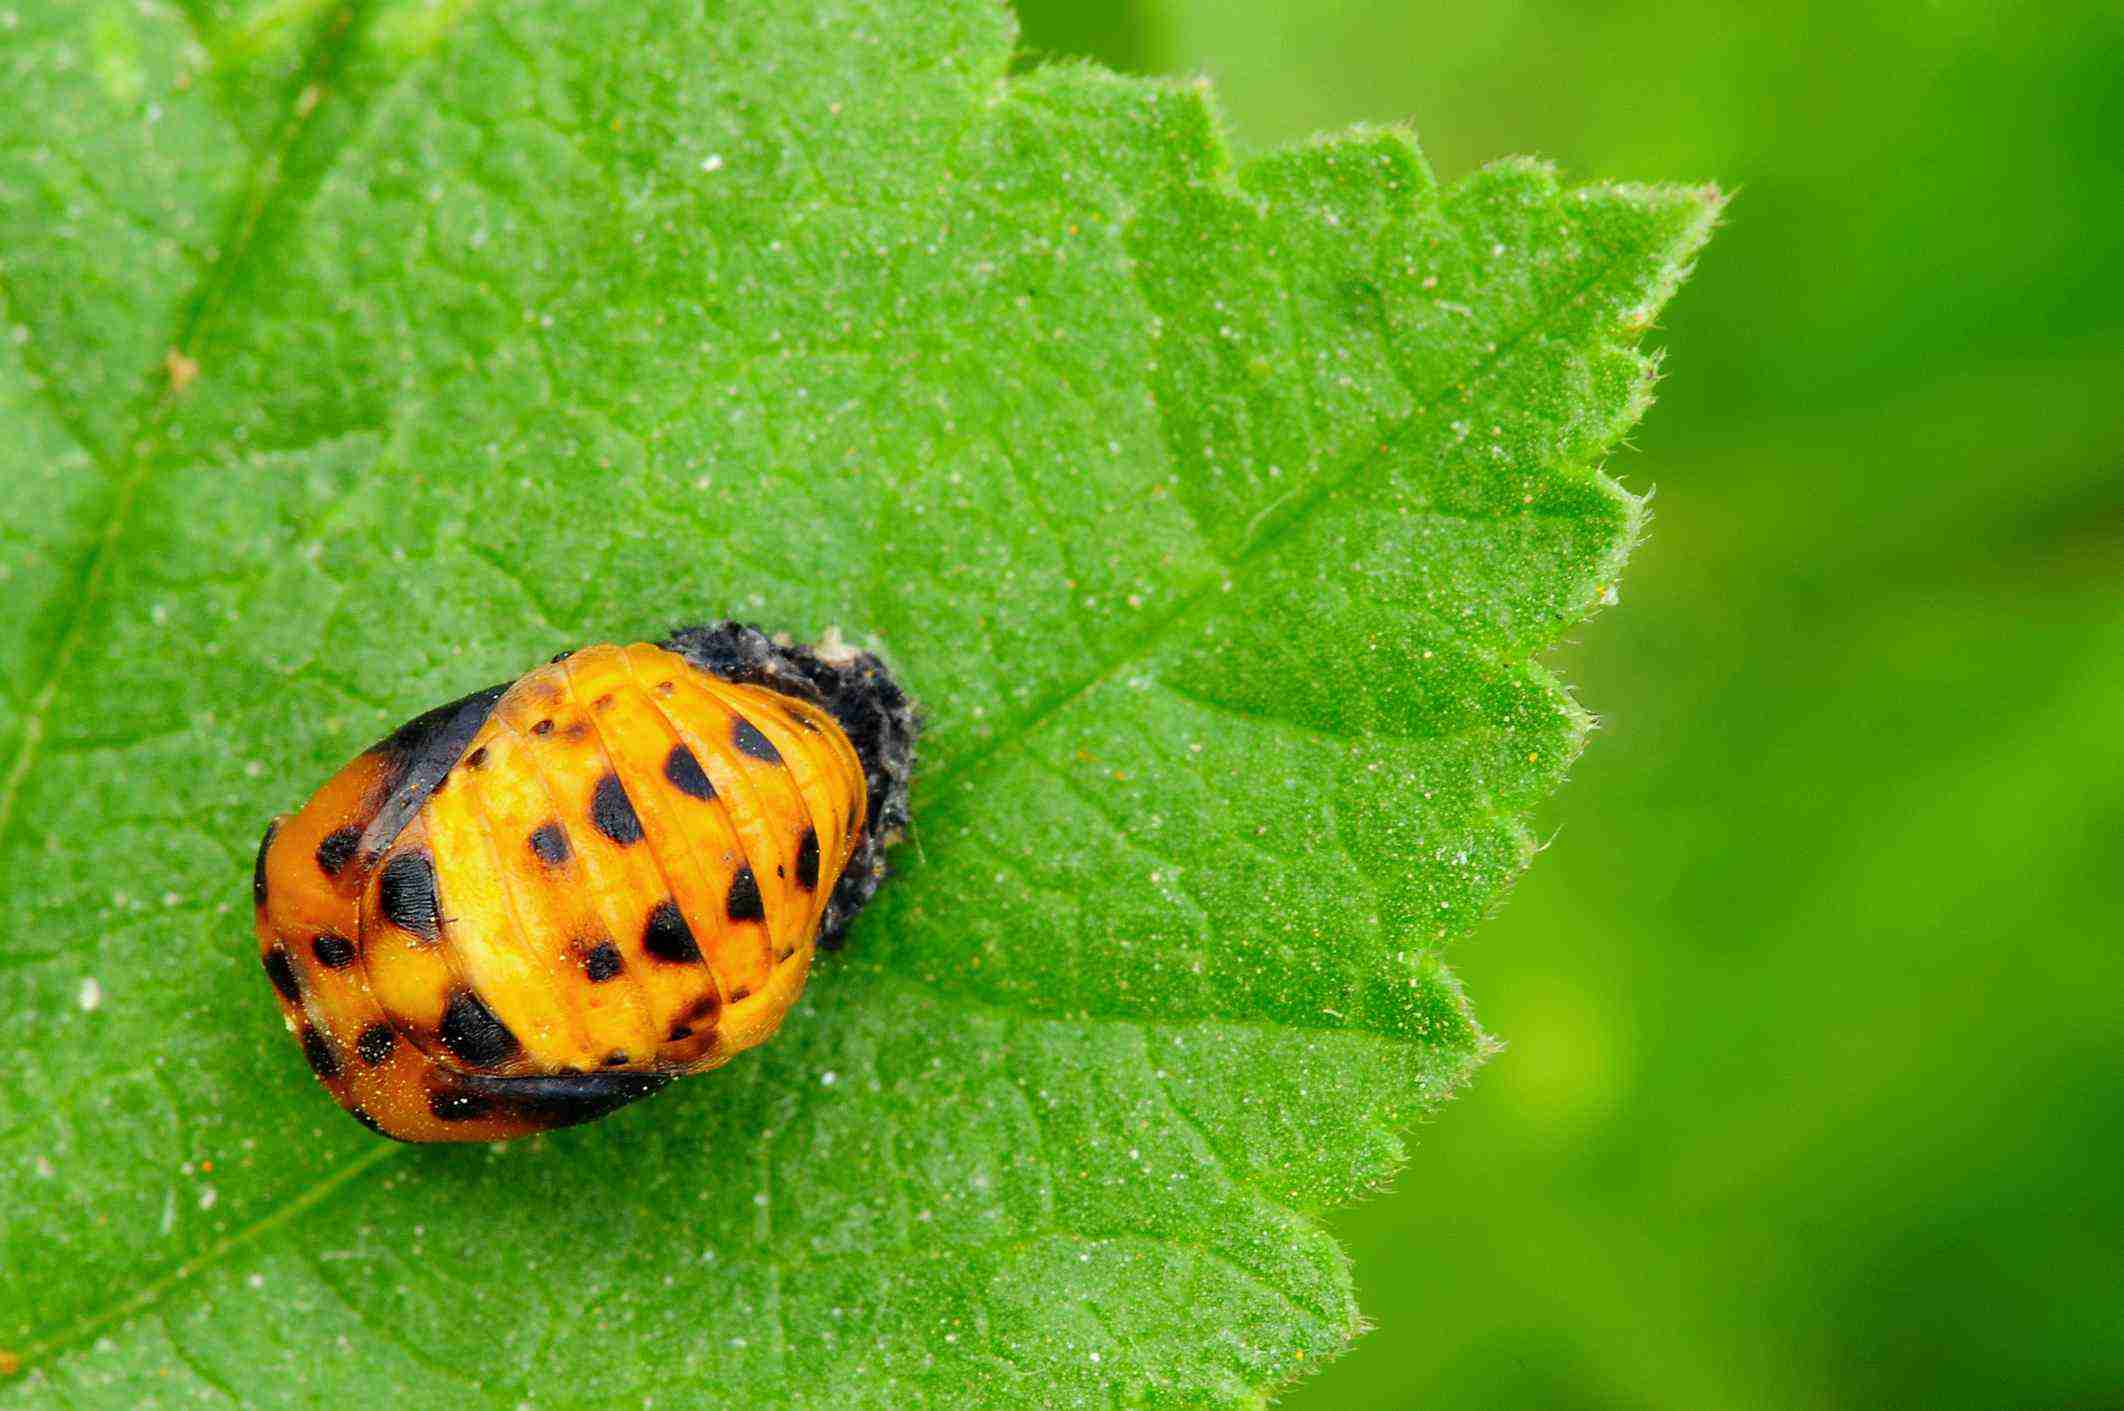 What Do Adult Ladybugs Eat?